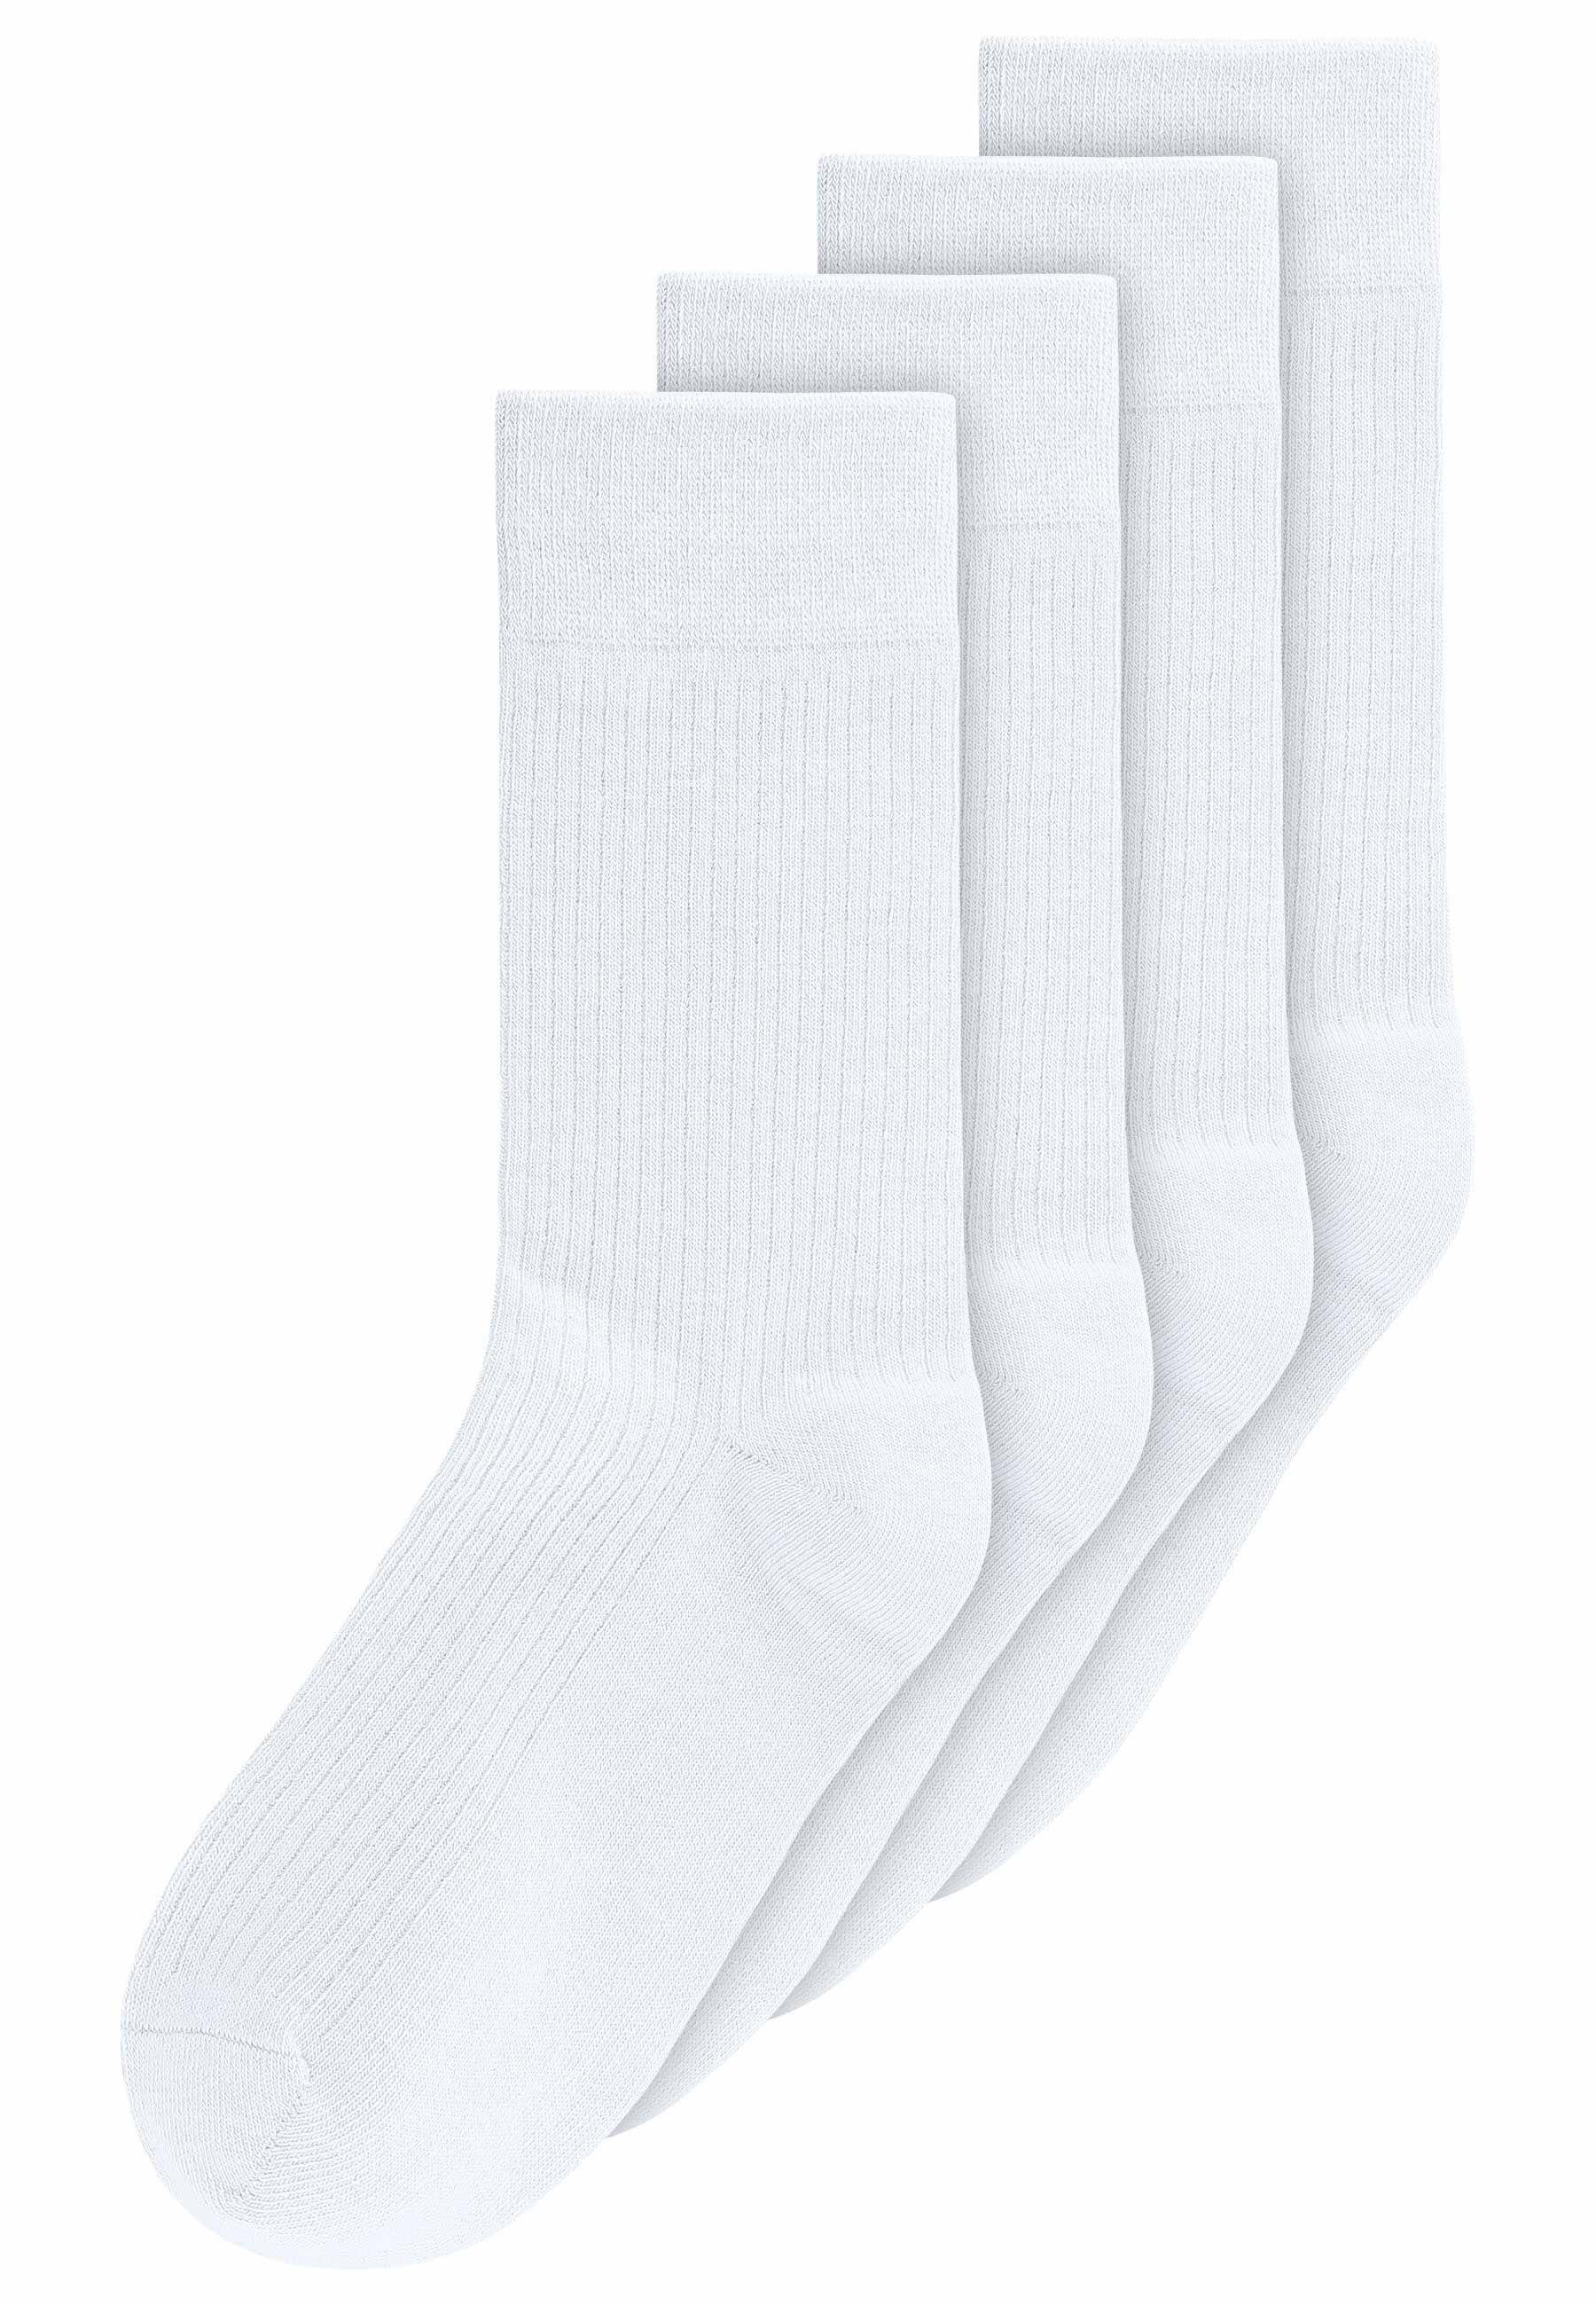 MELA Socken Gerippte Socken 4er Pack Das Elasthan "Roica" ist abbaubar, ohne Schadstoffe zu hinterlassen